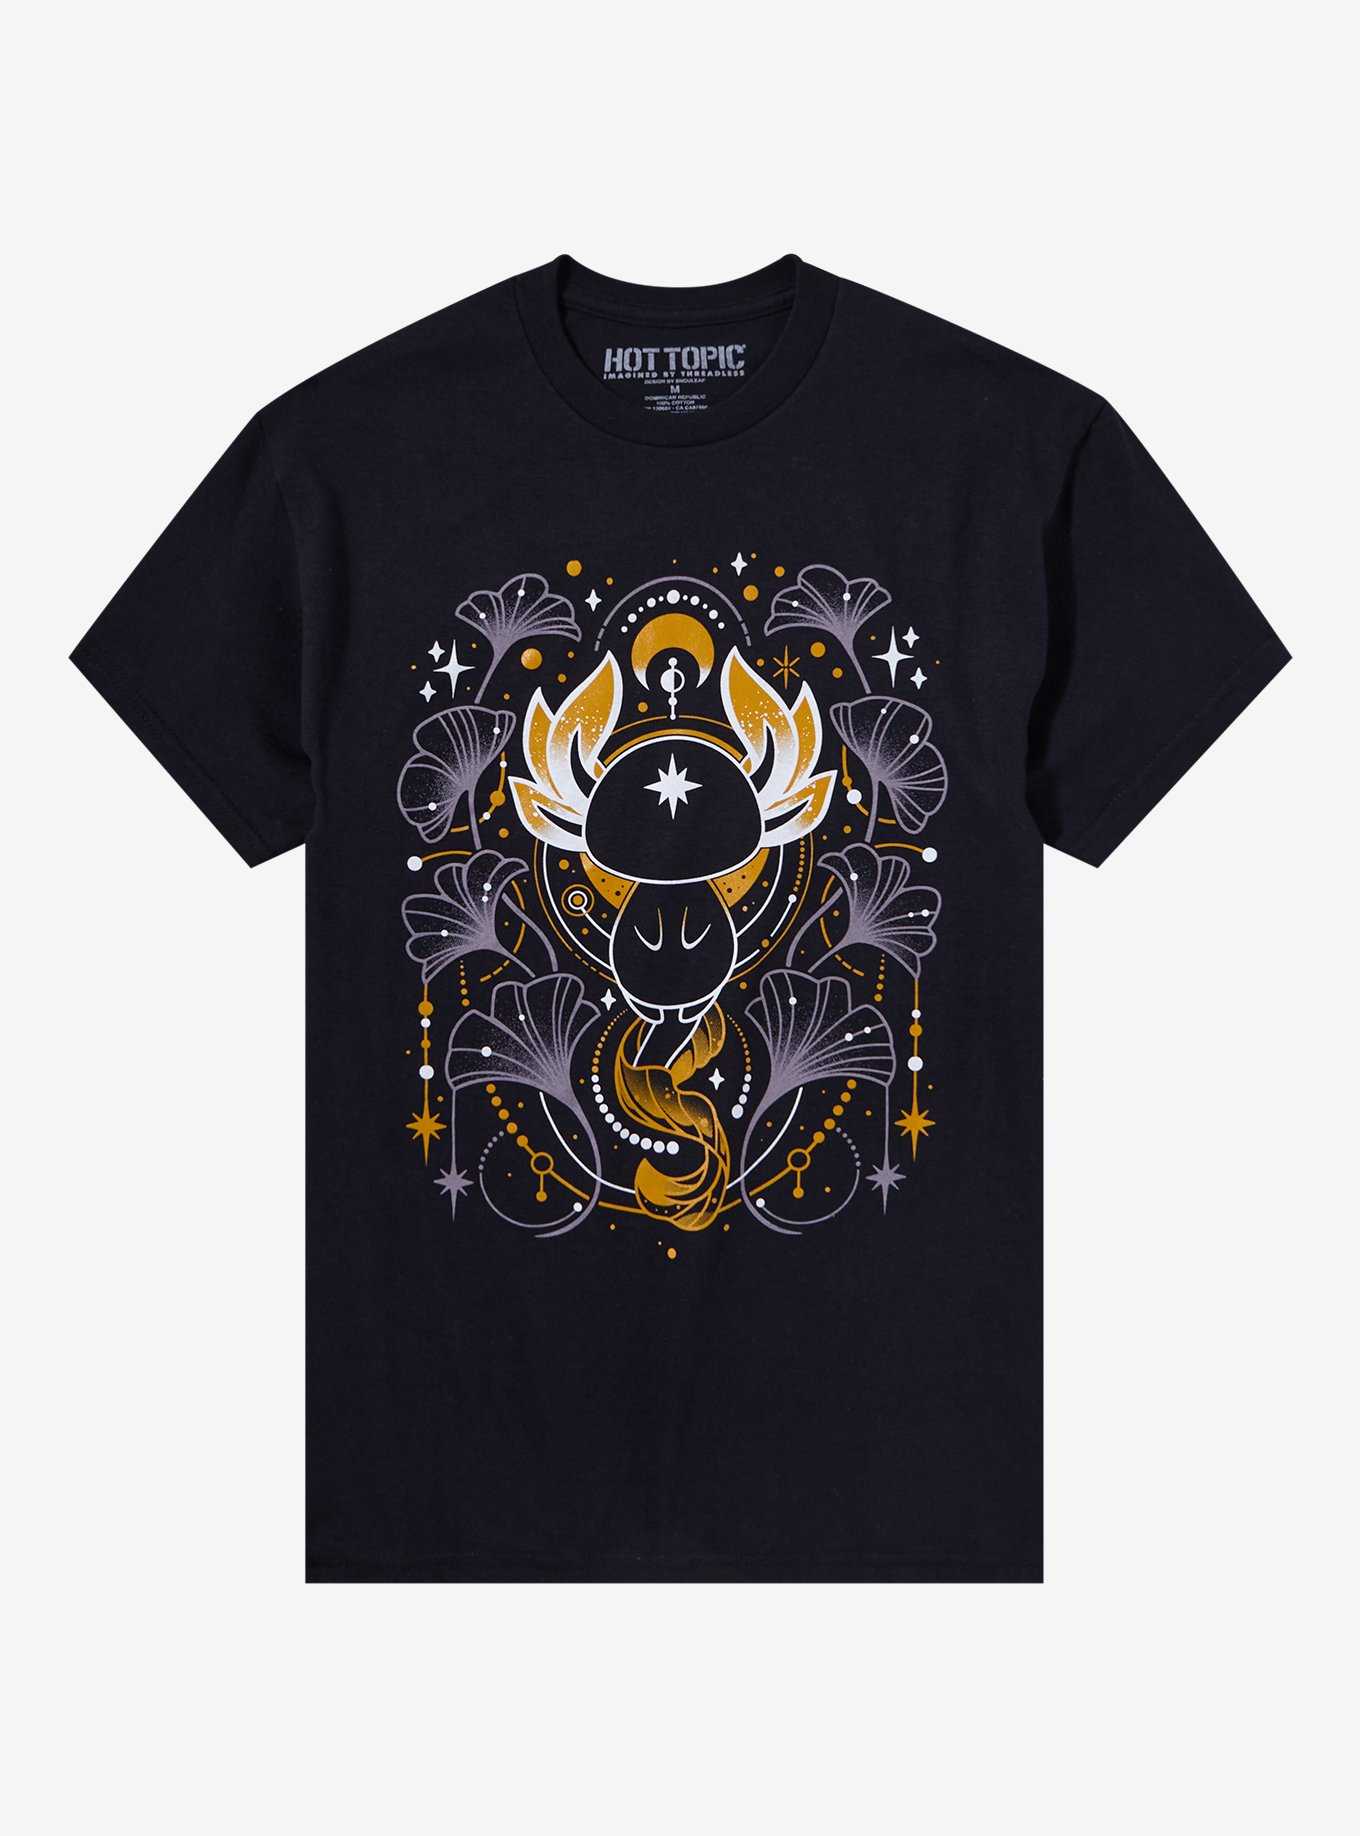 Mystical Axolotl T-Shirt By Snouleaf, , hi-res